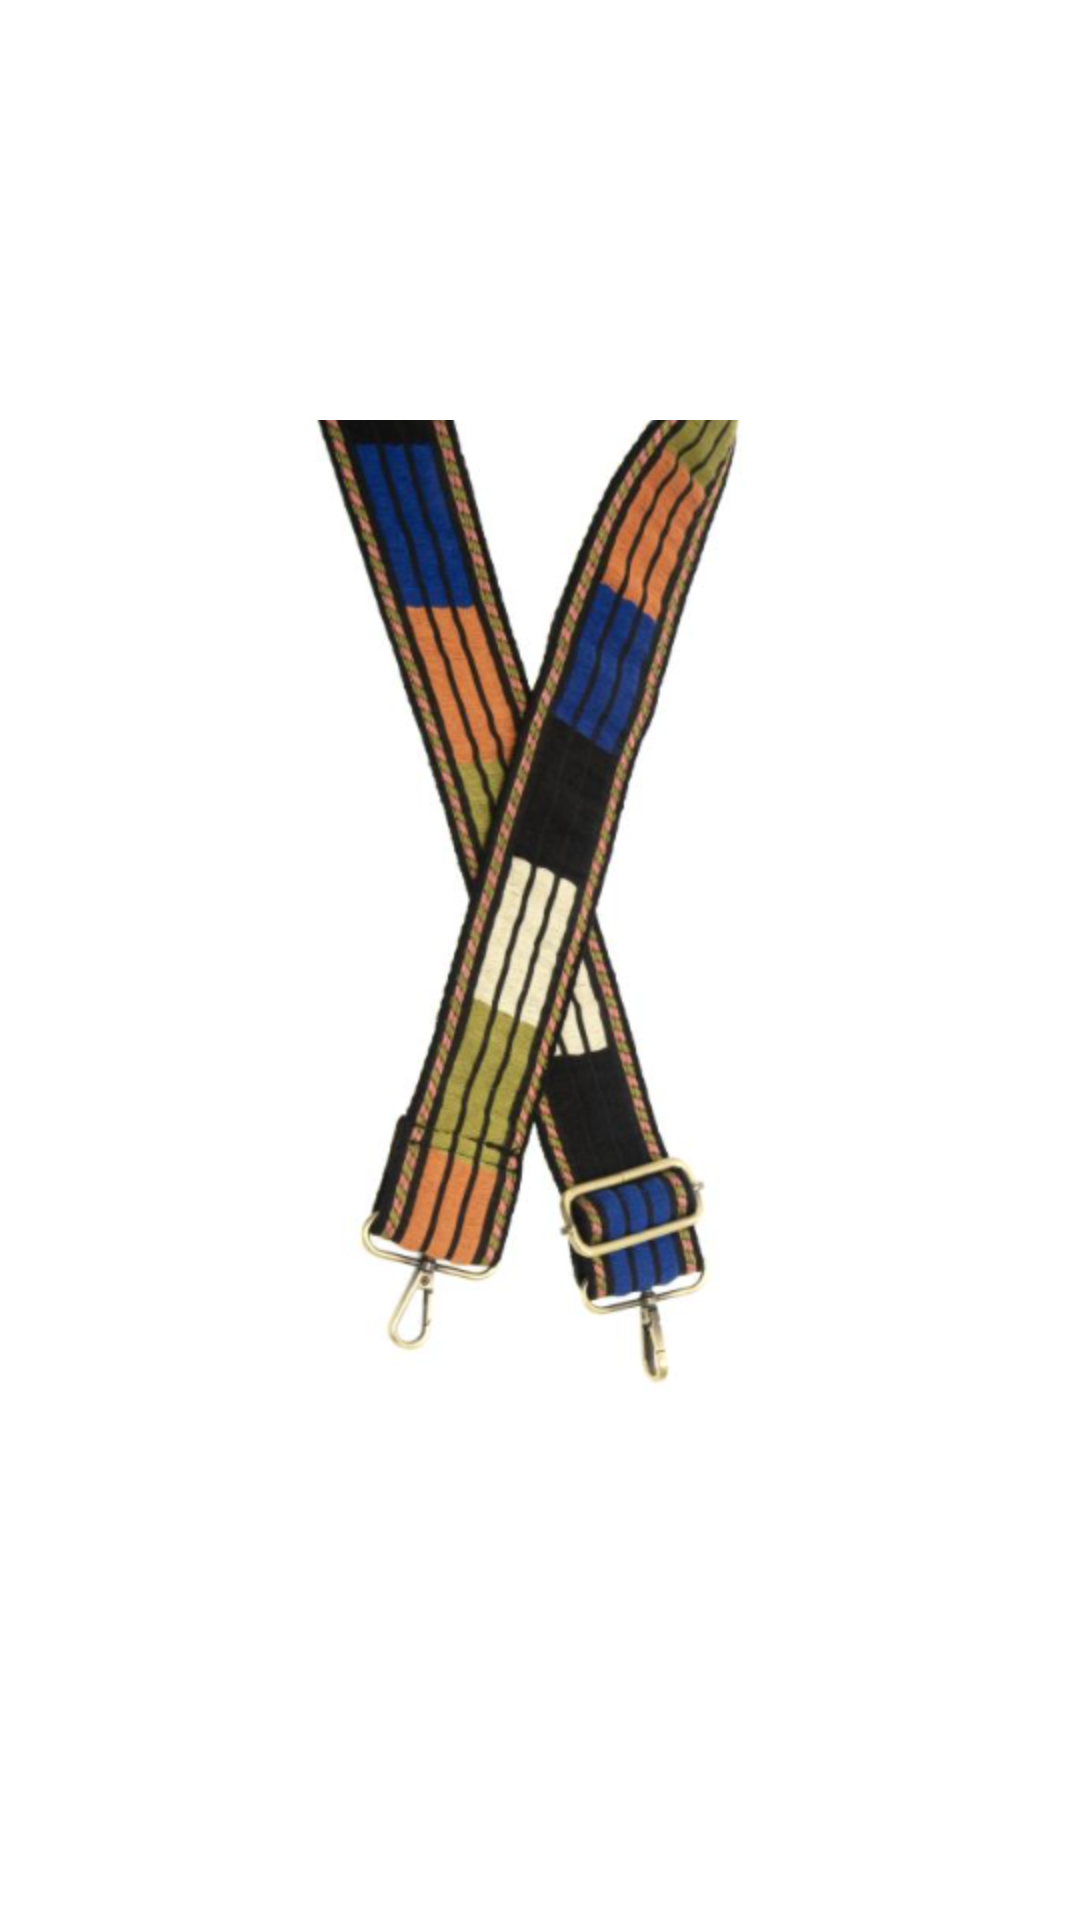 2" Multi Striped Colorblock Embroidered Guitar Strap